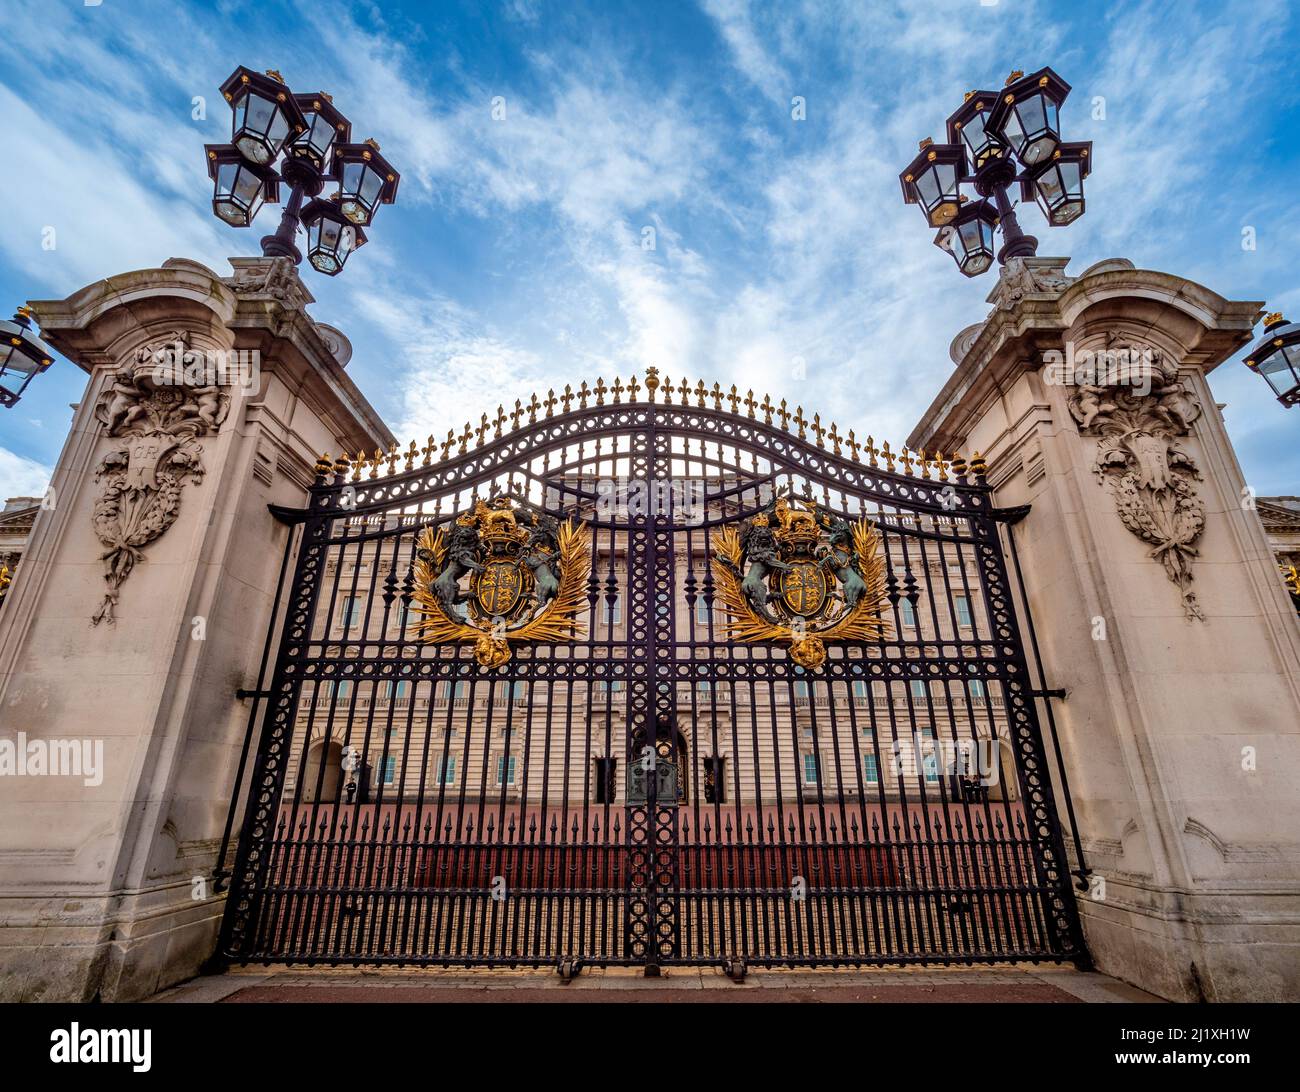 Ornate wrought iron gates at the entrance of Buckingham Palace. London. Stock Photo